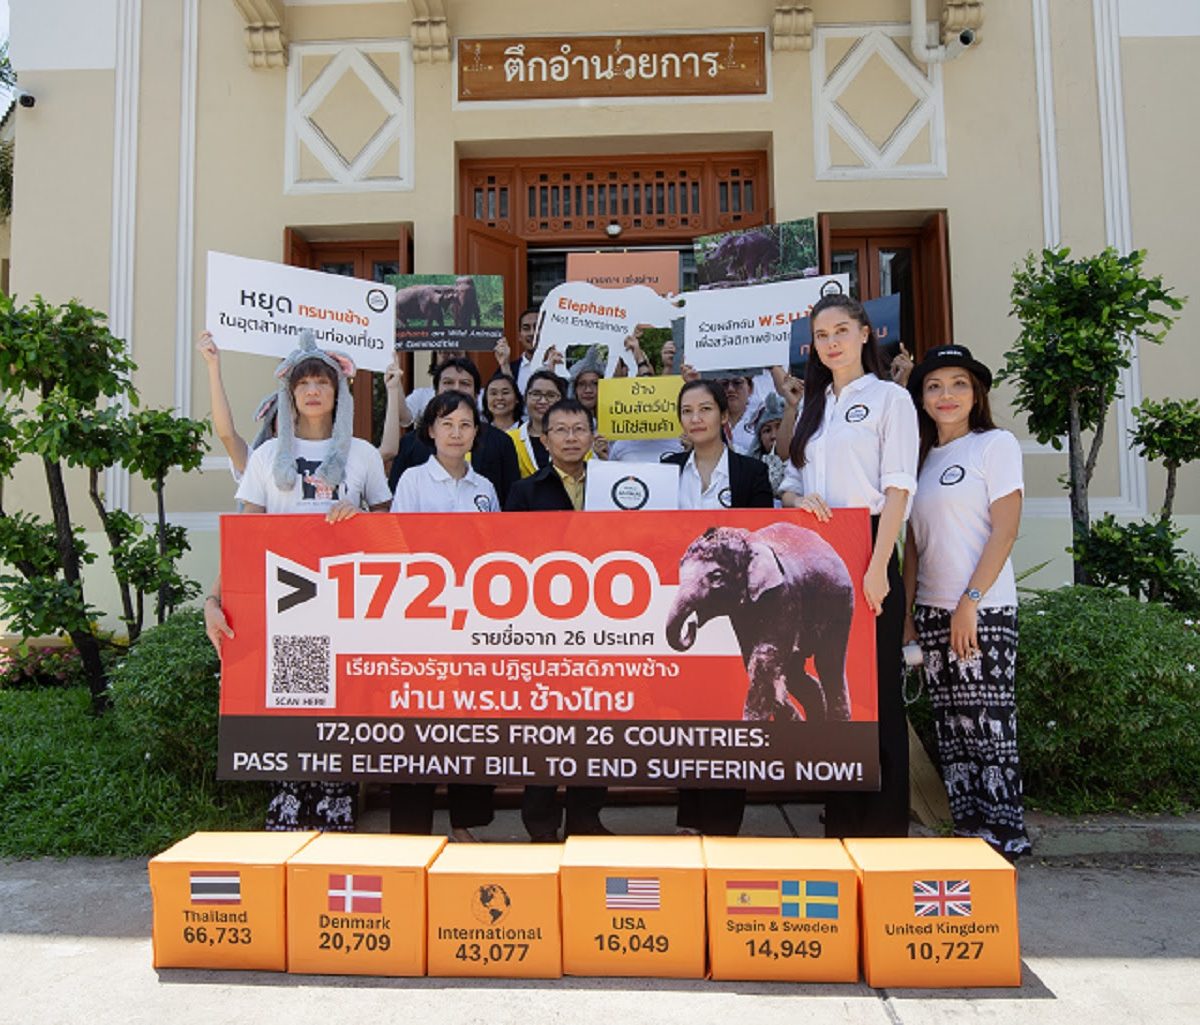 World Animal Protection negocia el fin de la explotación de elefantes con el gobierno tailandés